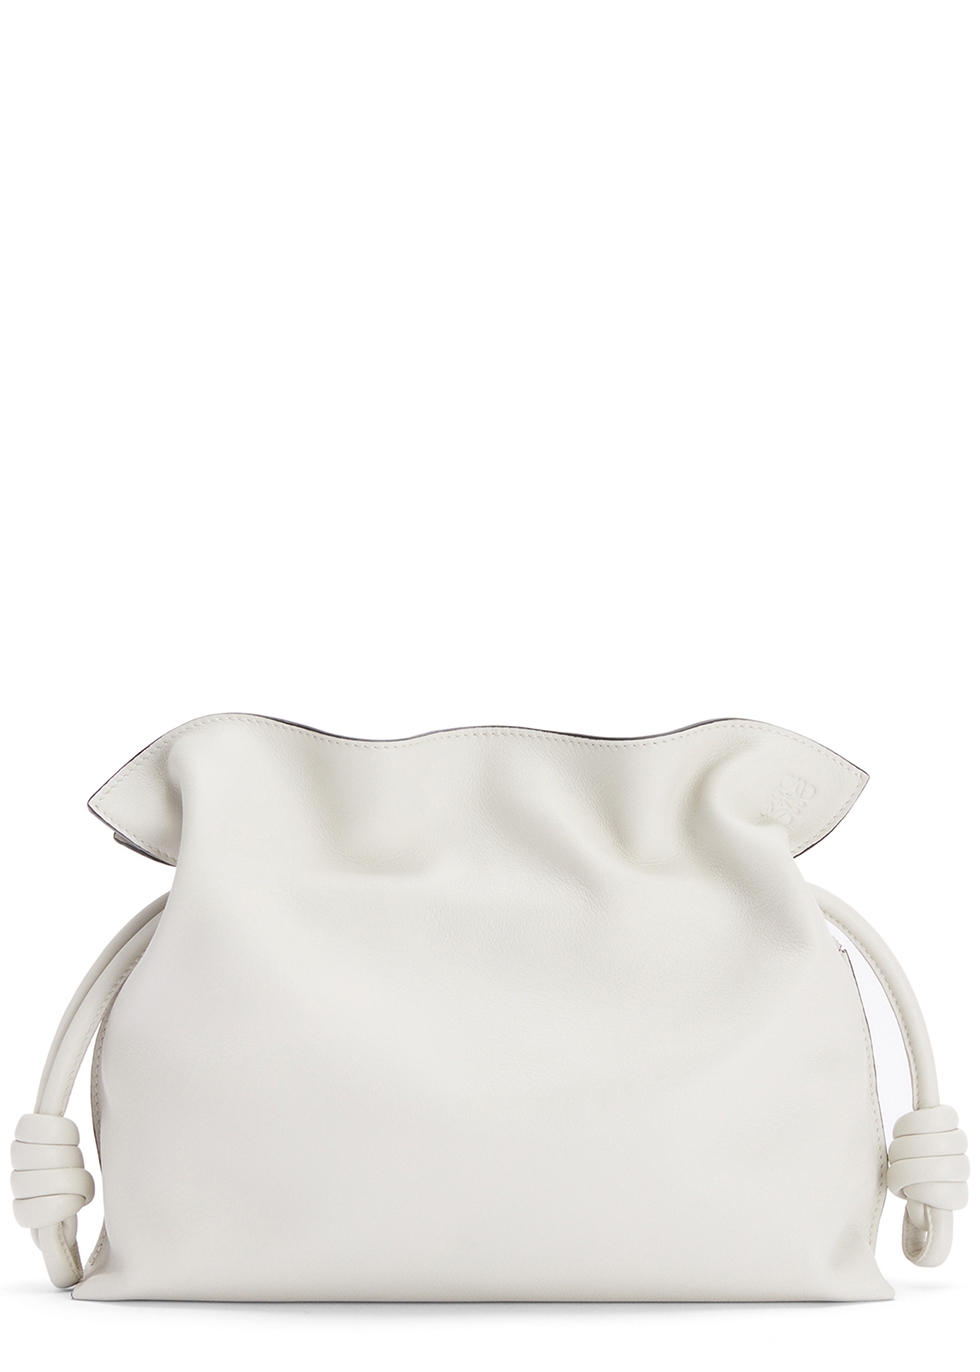 Loewe Flamenco white leather clutch 